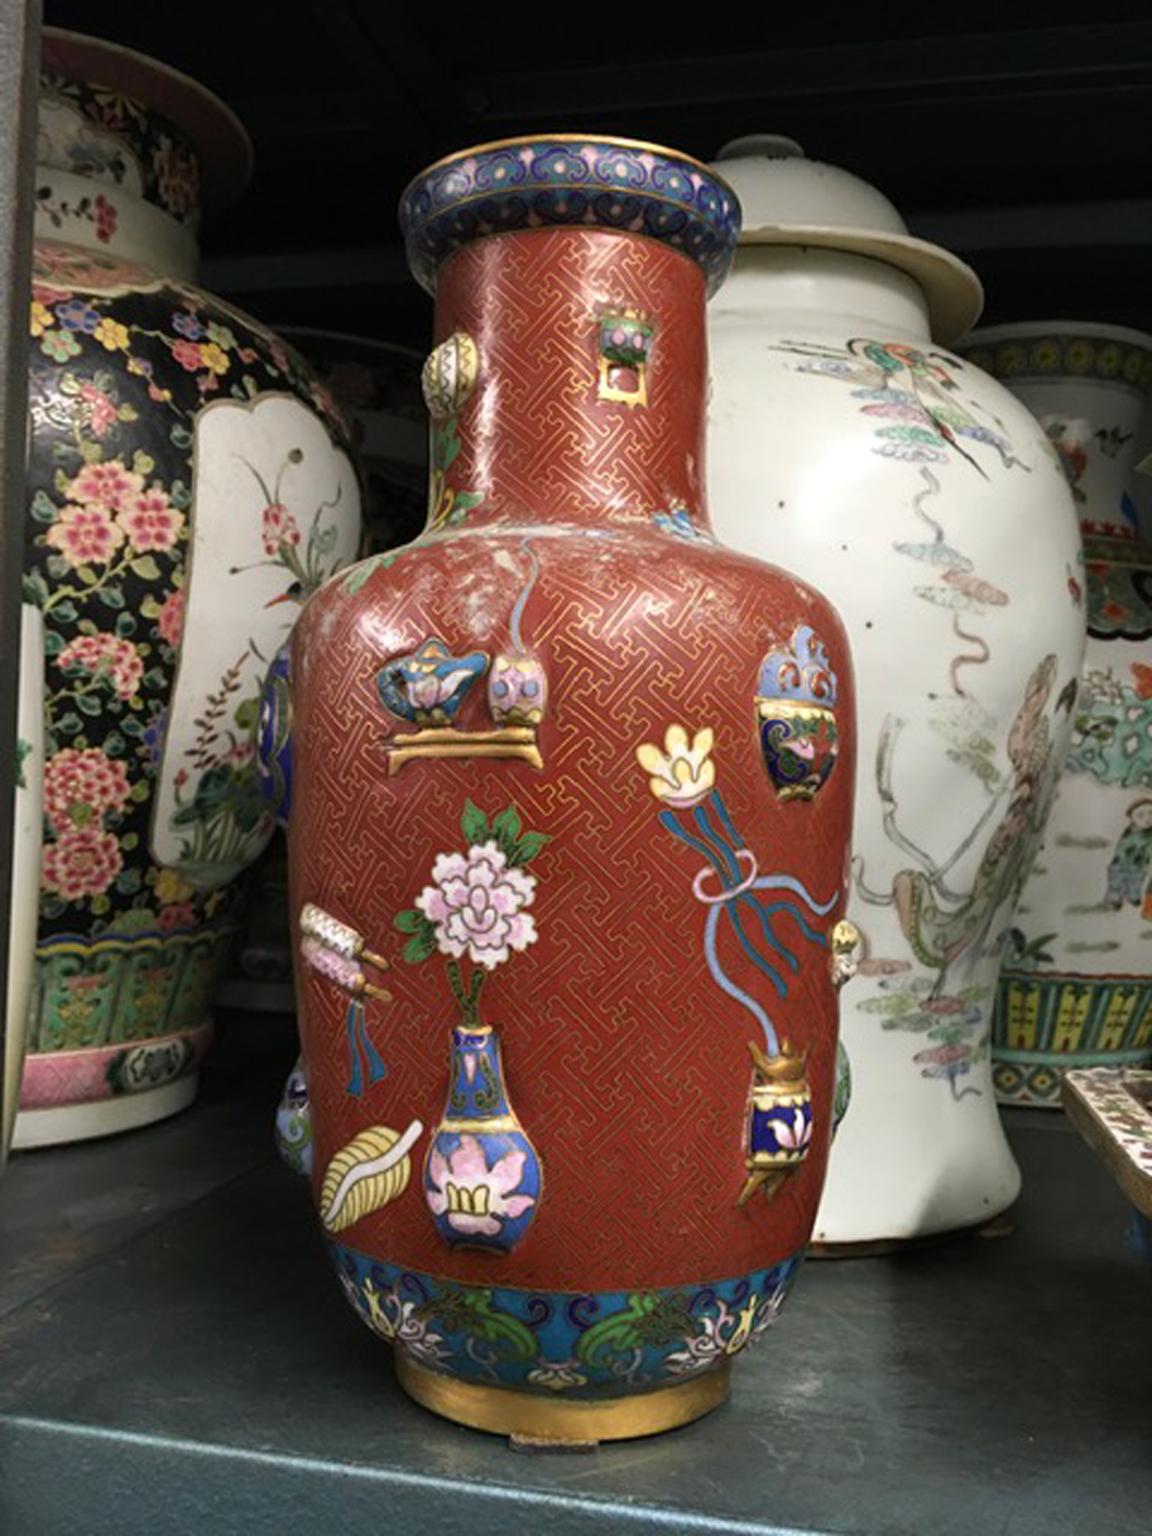 Ce vase Qing est très décoratif pour son émail coloré et très tendance dans une pièce élégante.
Elle est fabriquée à la main selon la technique ancienne appelée 